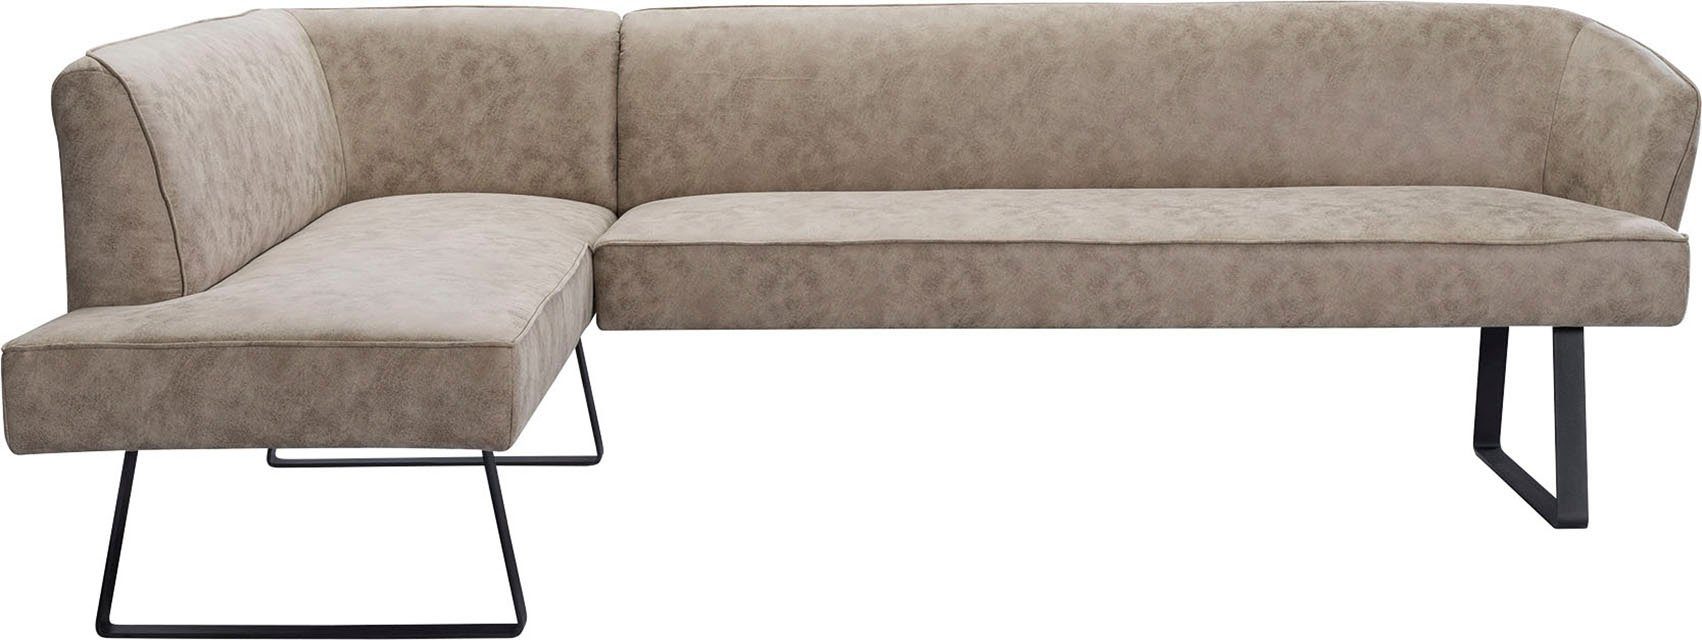 exxpo - sofa Americano, Eckbank mit und Metallfüßen, fashion in Bezug Keder Qualitäten verschiedenen